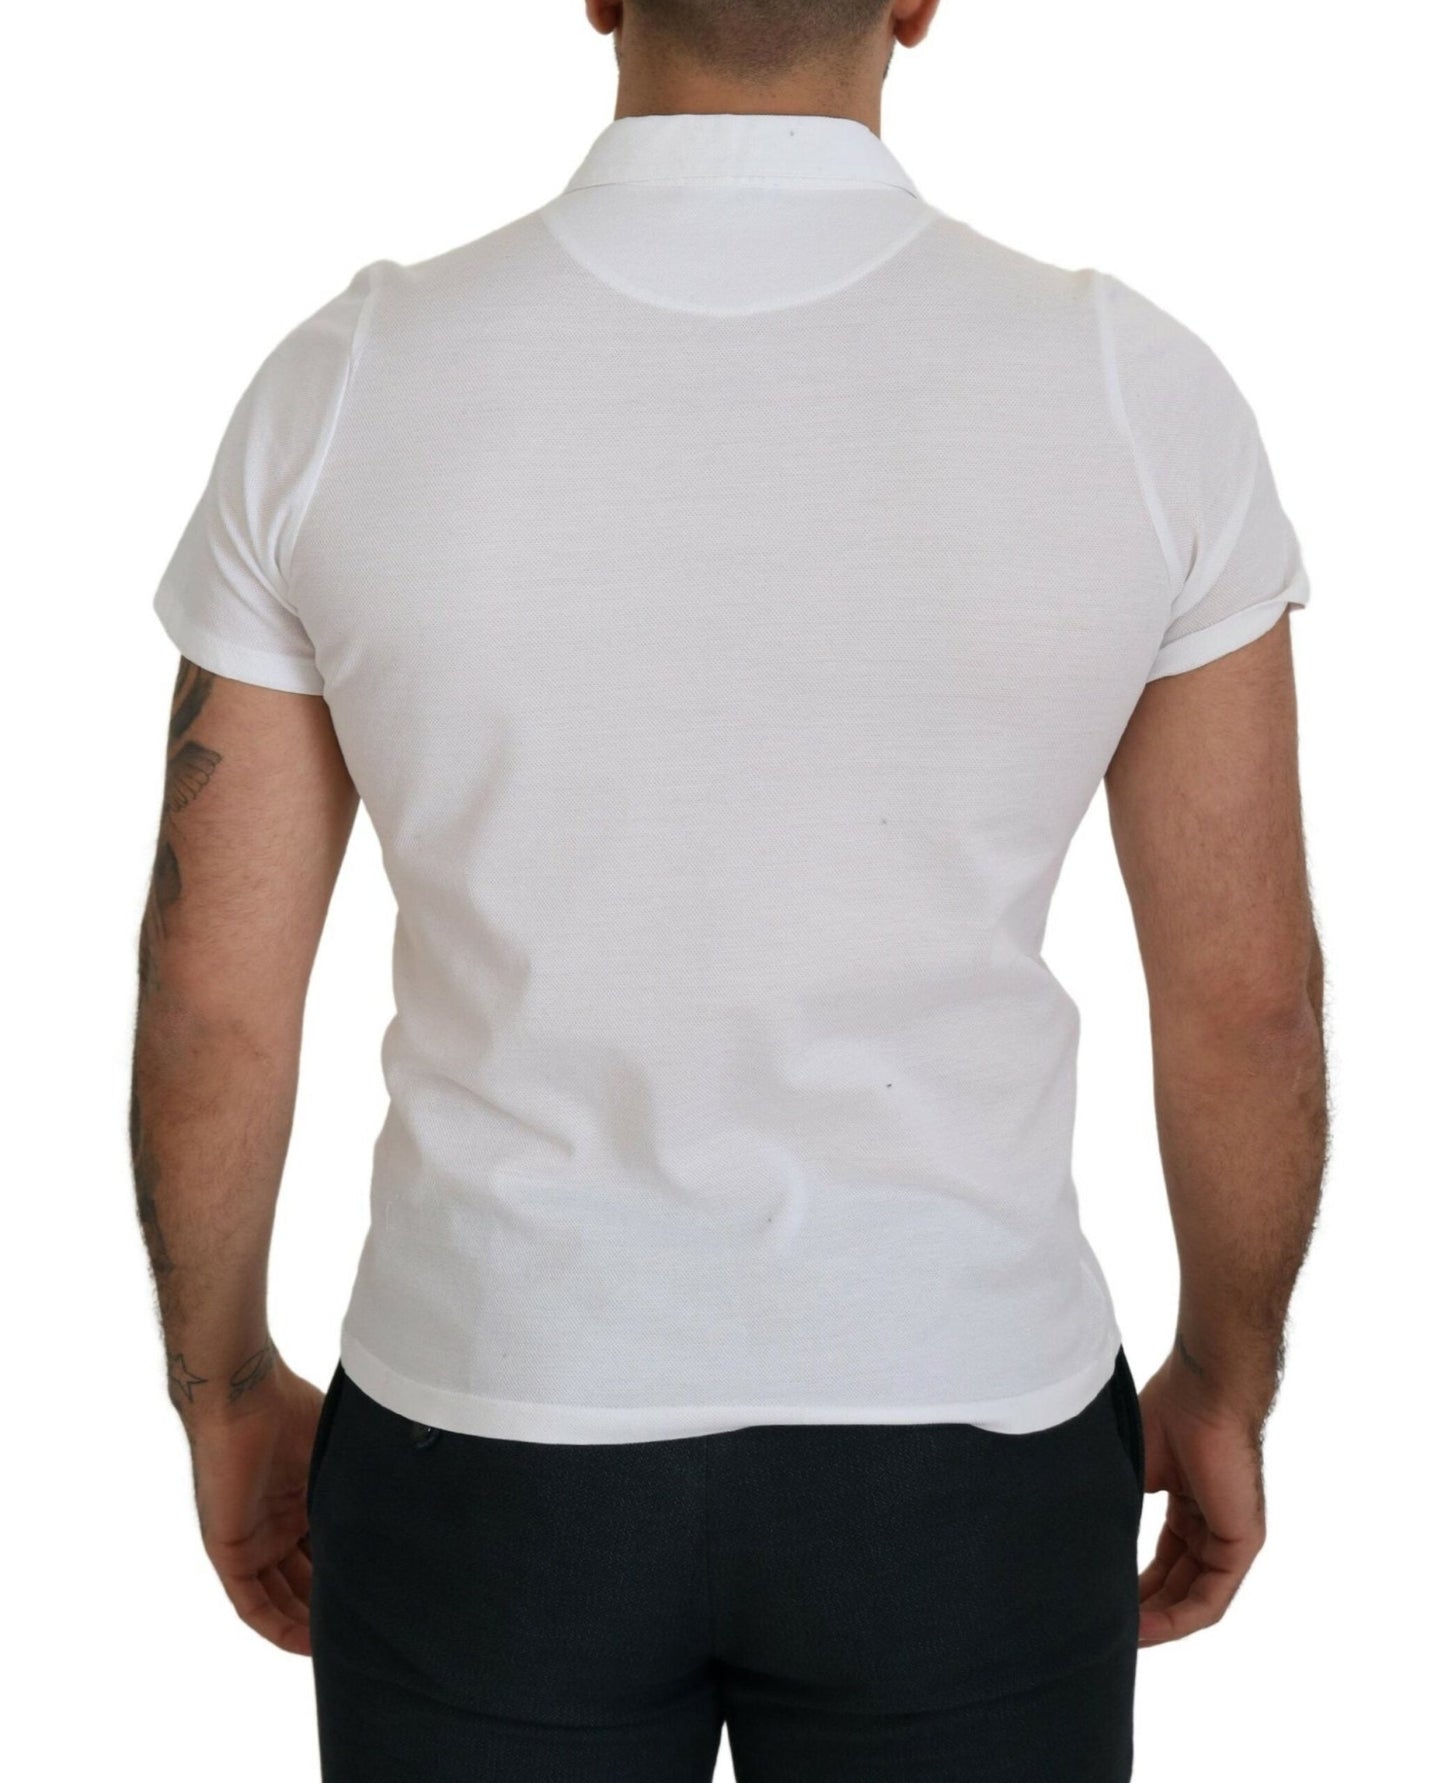 FRADI Elegant White Cotton Polo T-Shirt